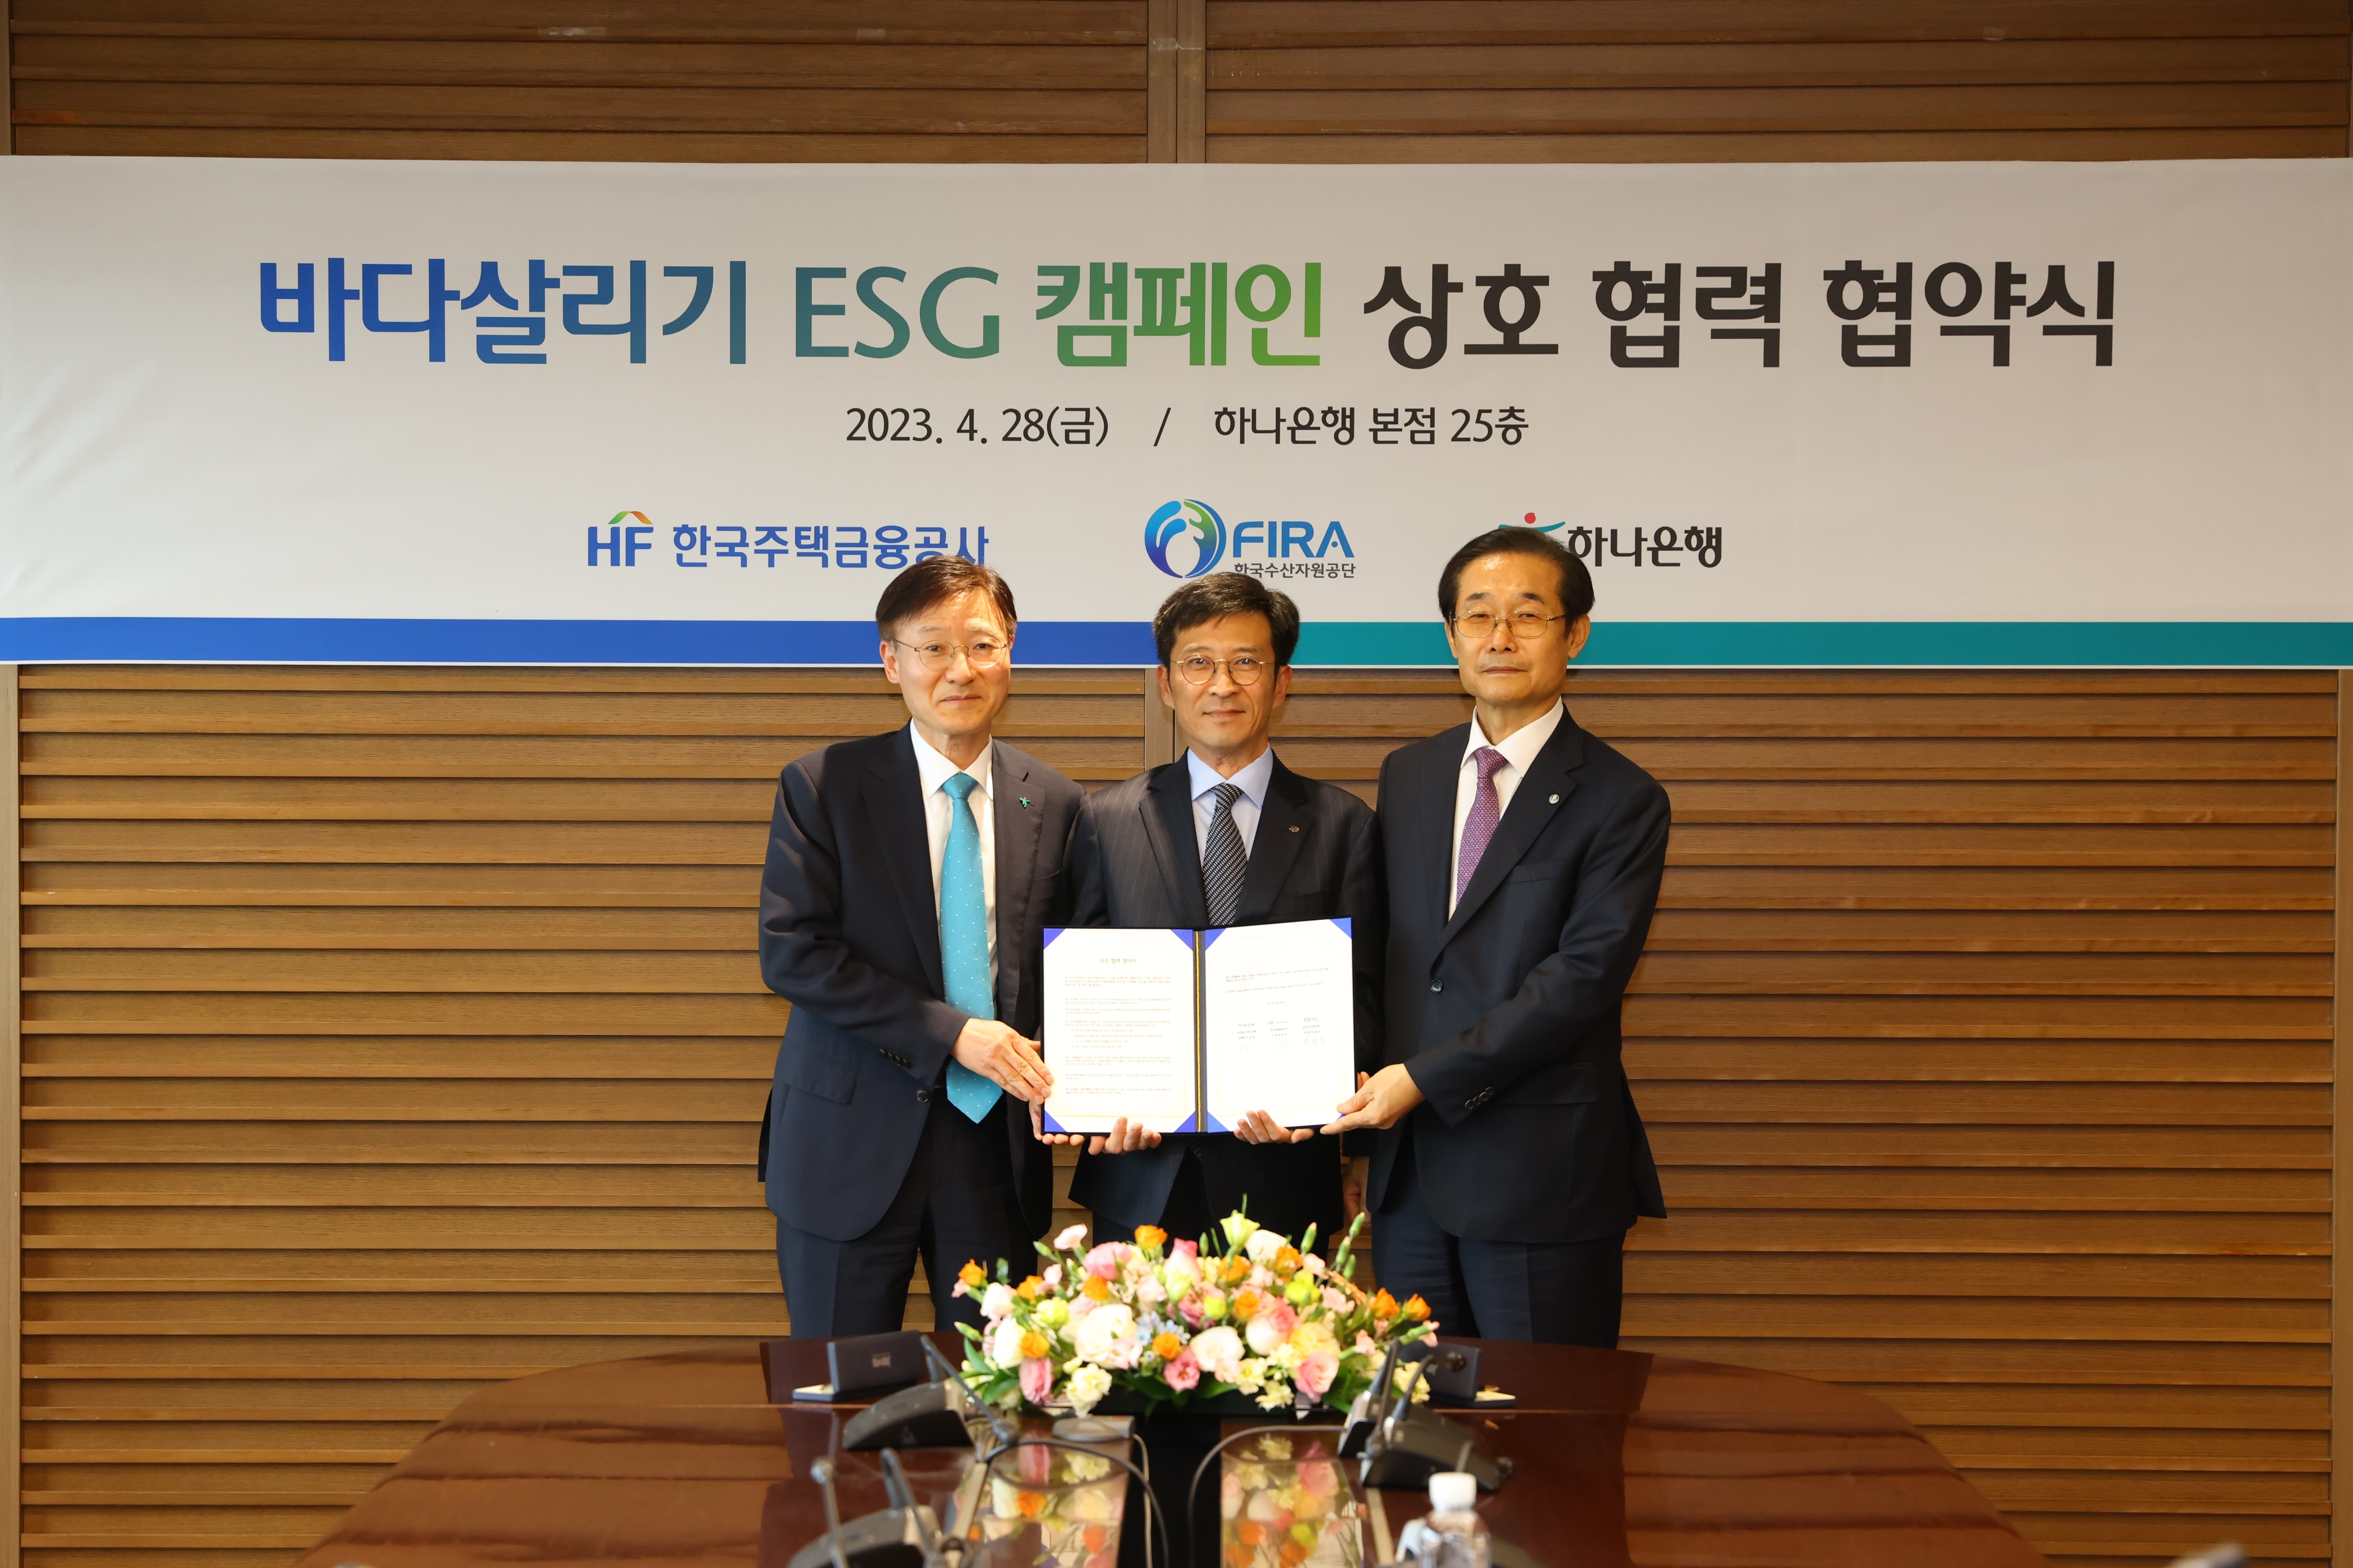 [보도자료 참고]한국수산자원공단-한국주택금융공사-하나은행 업무협약(MOU) 체결.JPG